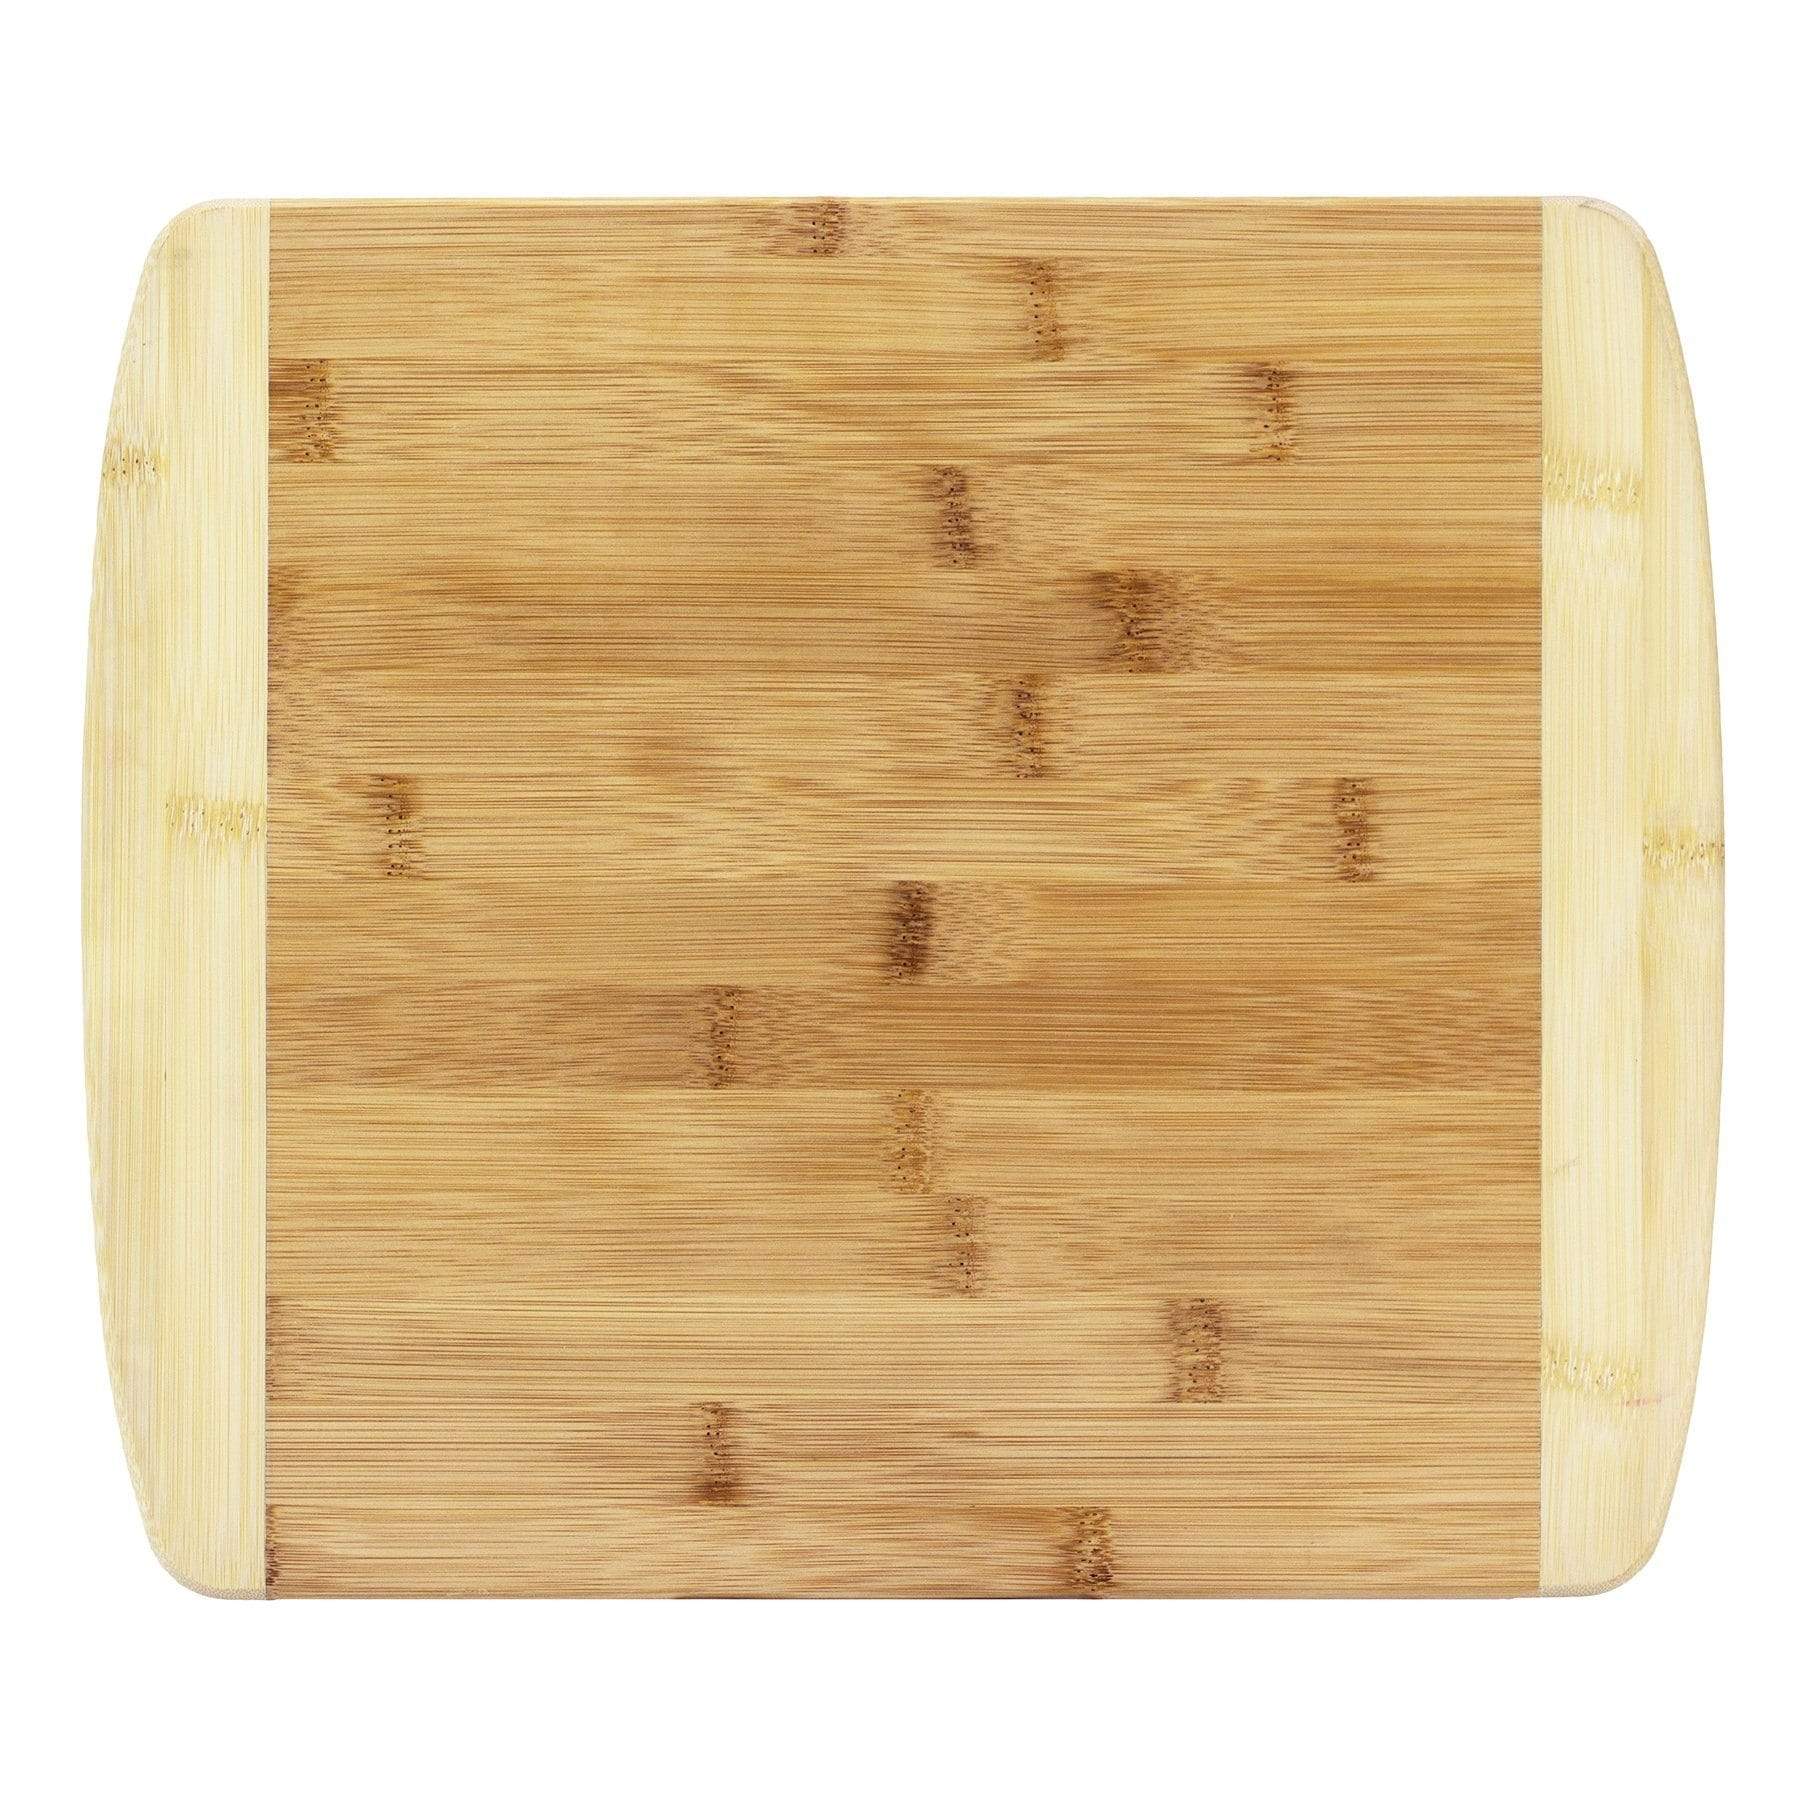 Totally Bamboo 14 in. L x 7 in. W x 0.62 in. Acacia Wood Cutting Board